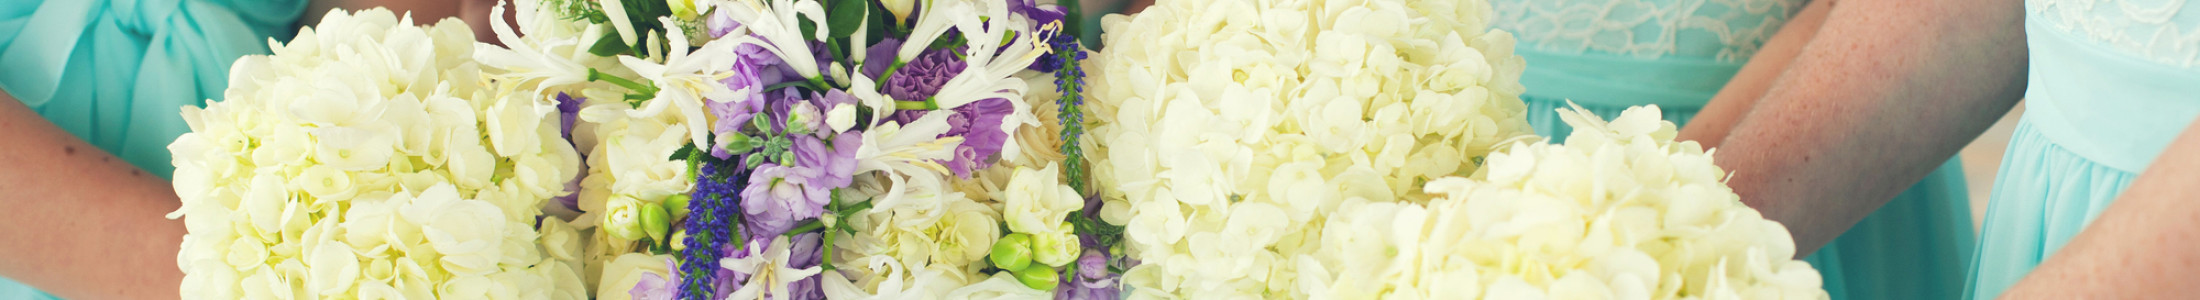 Wedding Flowers, Wedding Florist, Tucson AZ Florist